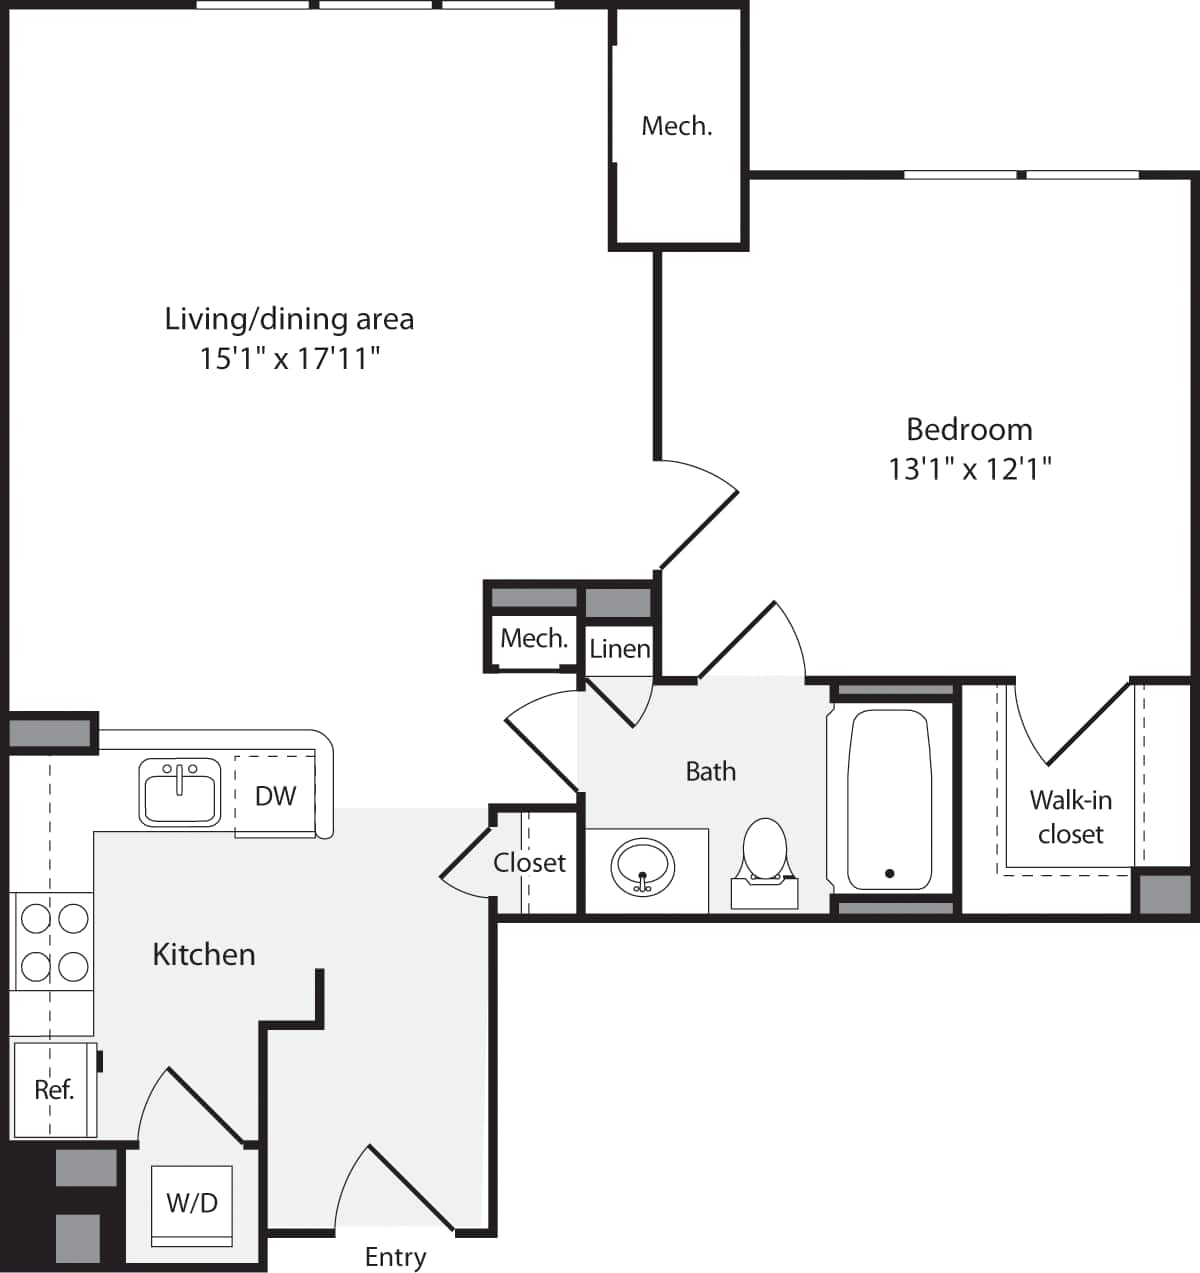 Floorplan diagram for 1 Bedroom F No Fireplace, showing 1 bedroom